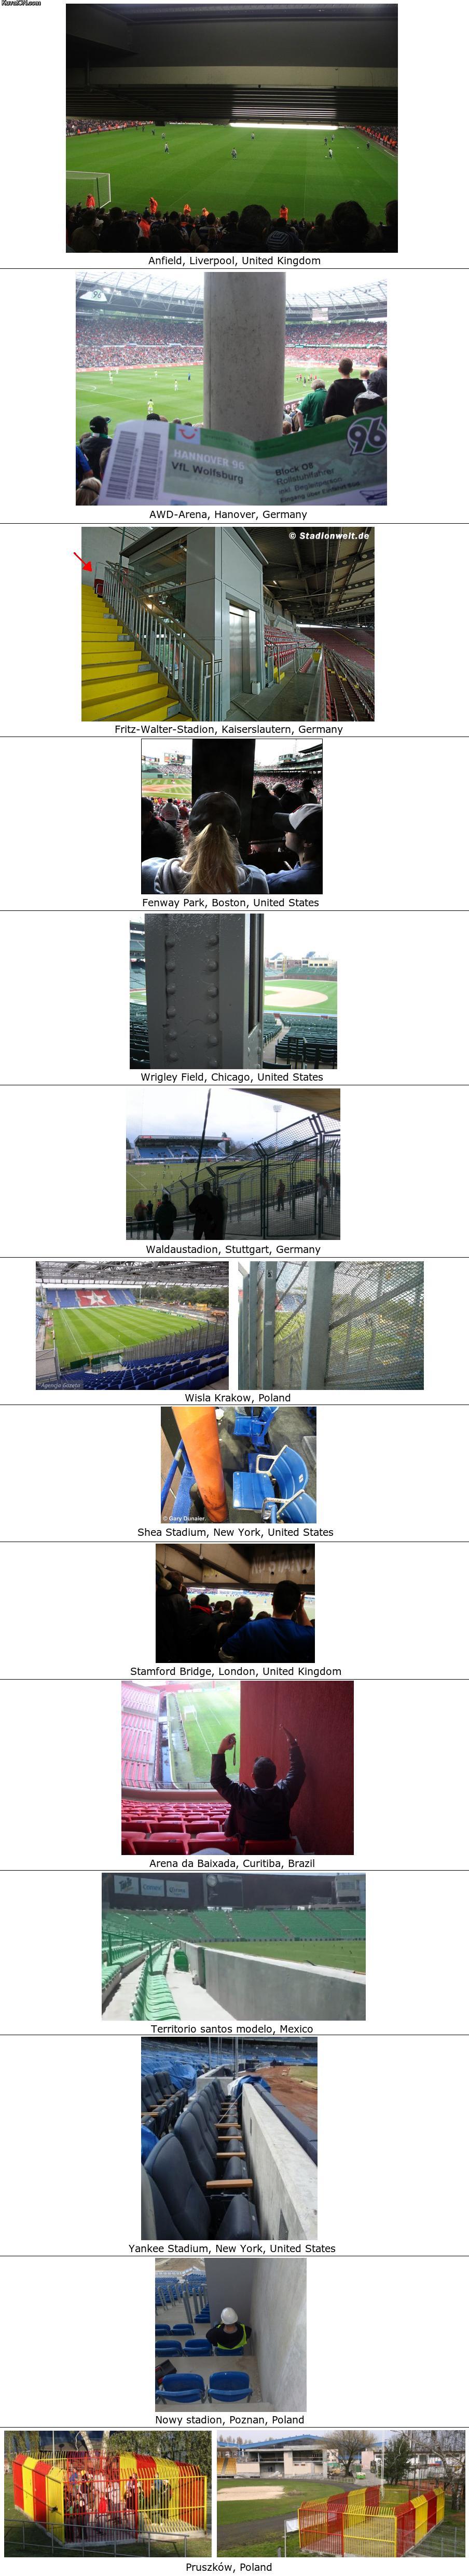 stadium_views.jpg